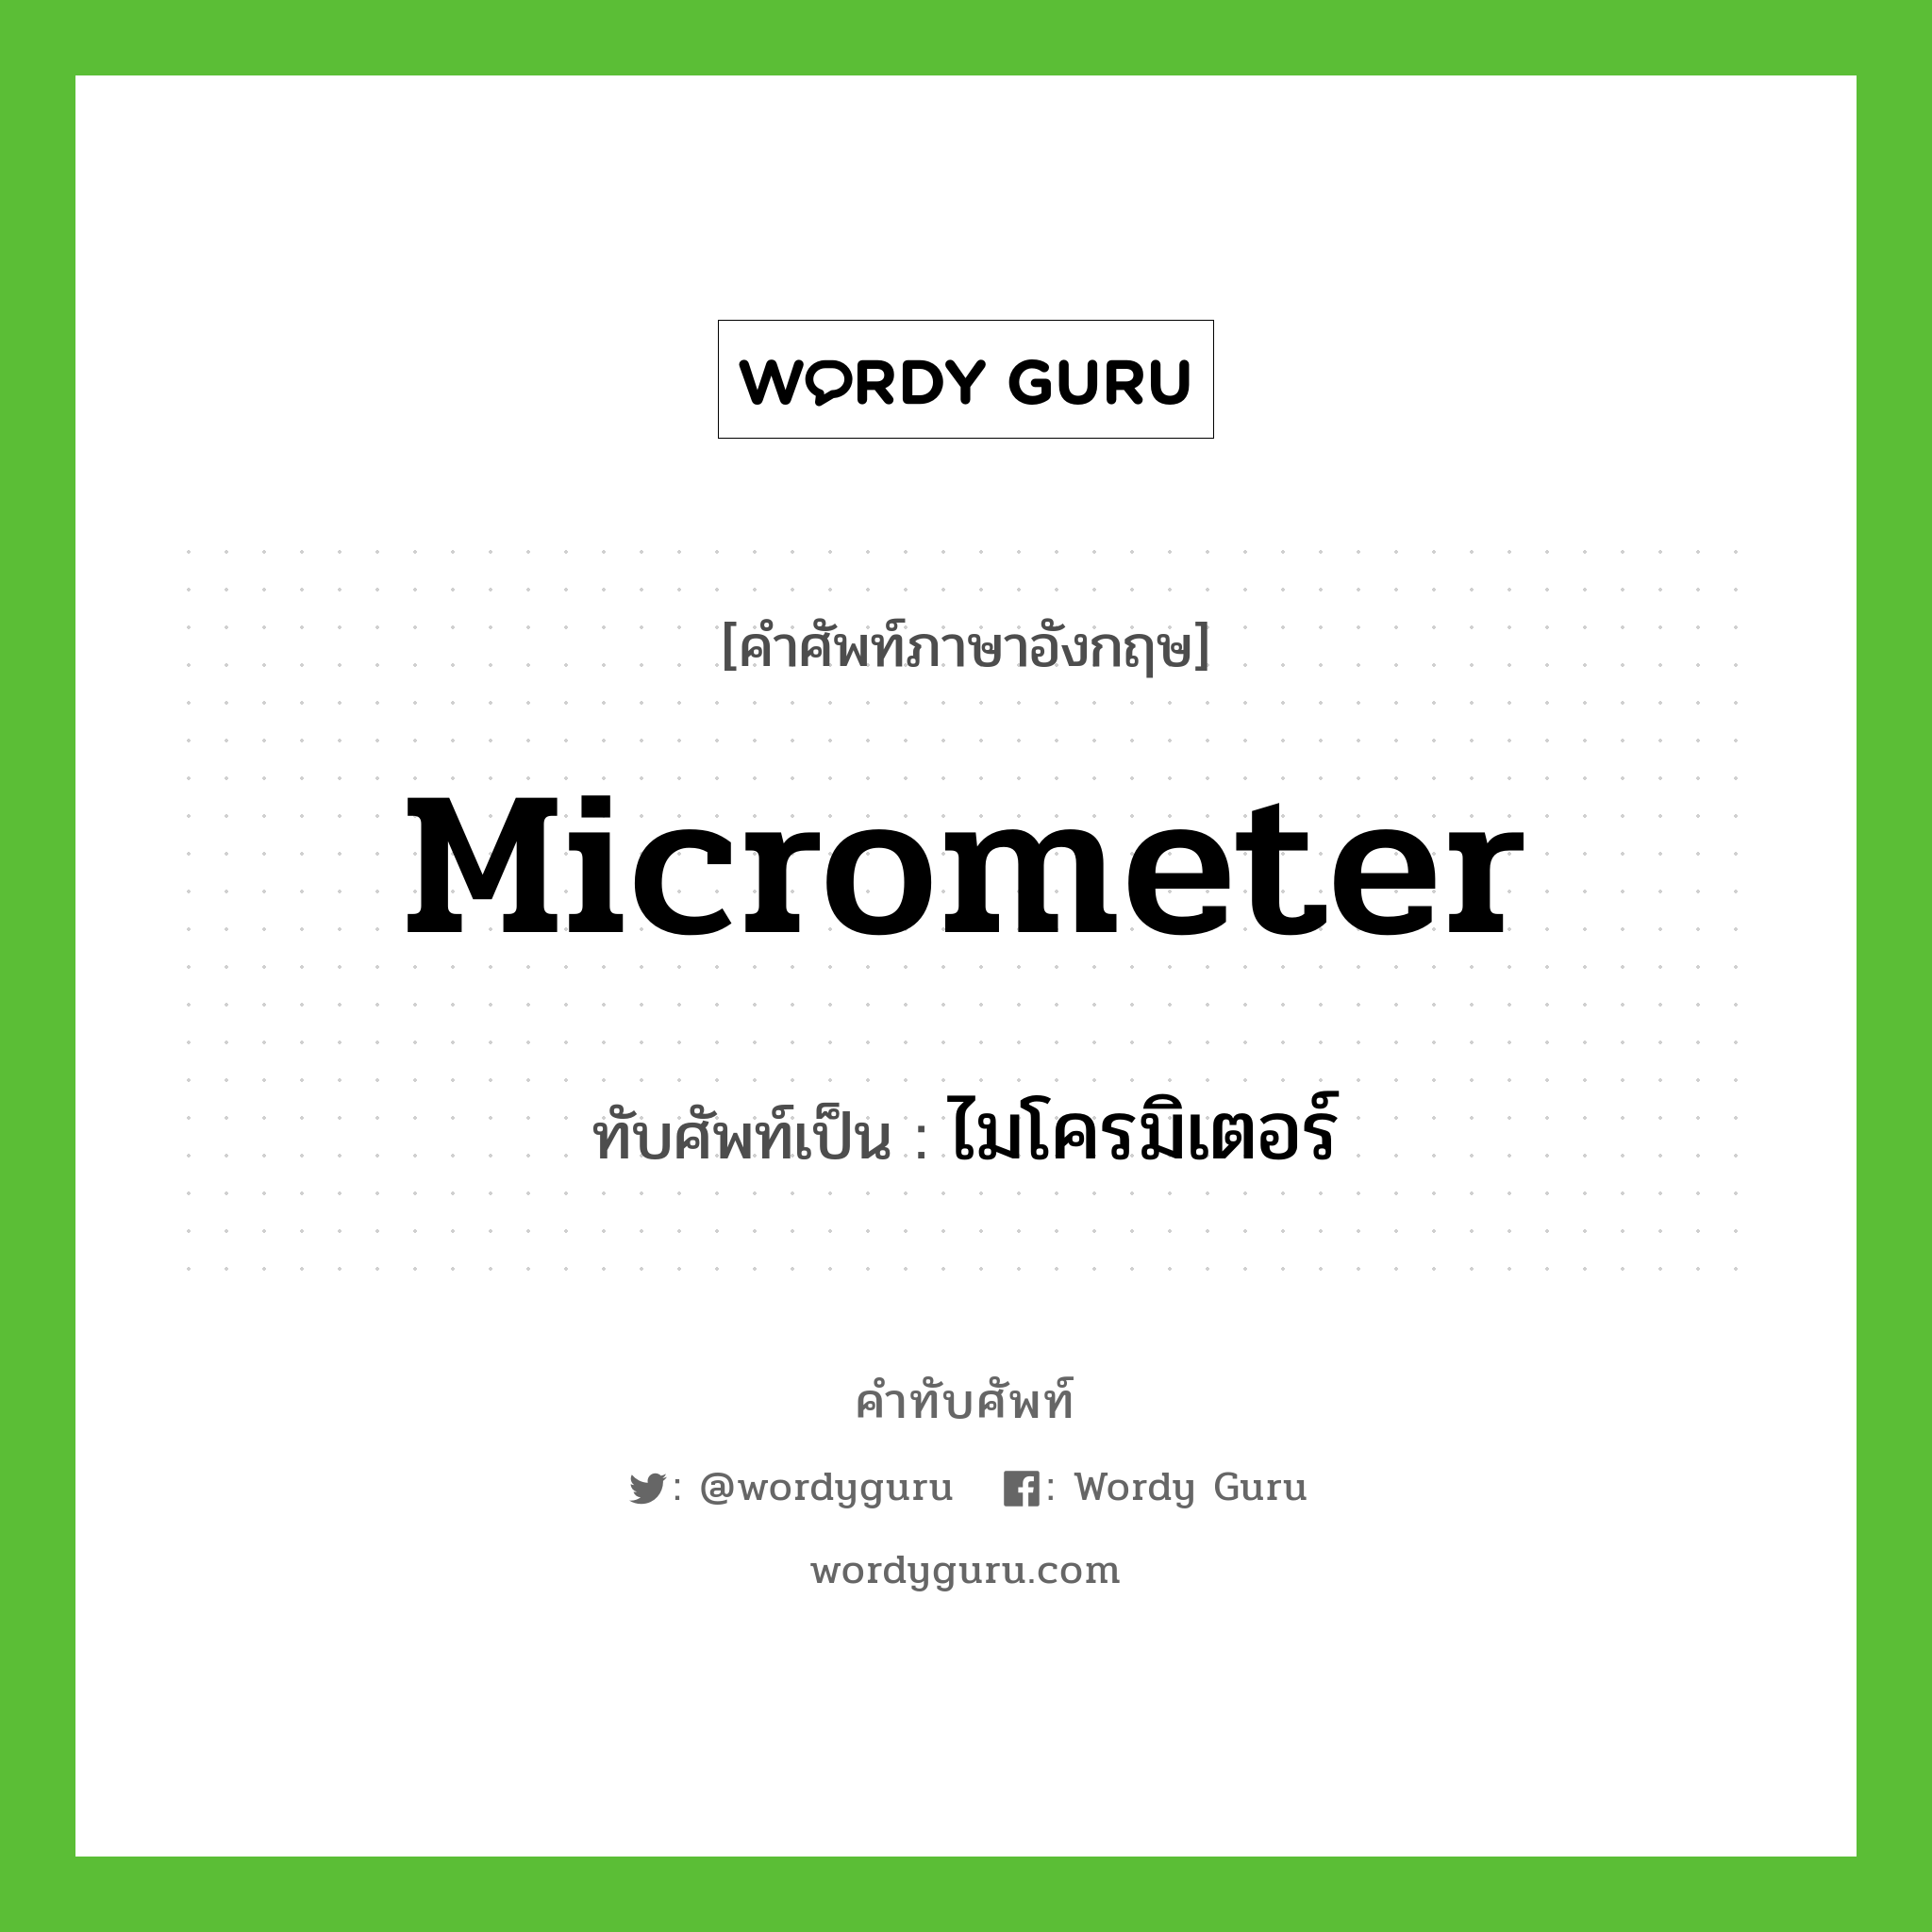 micrometer เขียนเป็นคำไทยว่าอะไร?, คำศัพท์ภาษาอังกฤษ micrometer ทับศัพท์เป็น ไมโครมิเตอร์